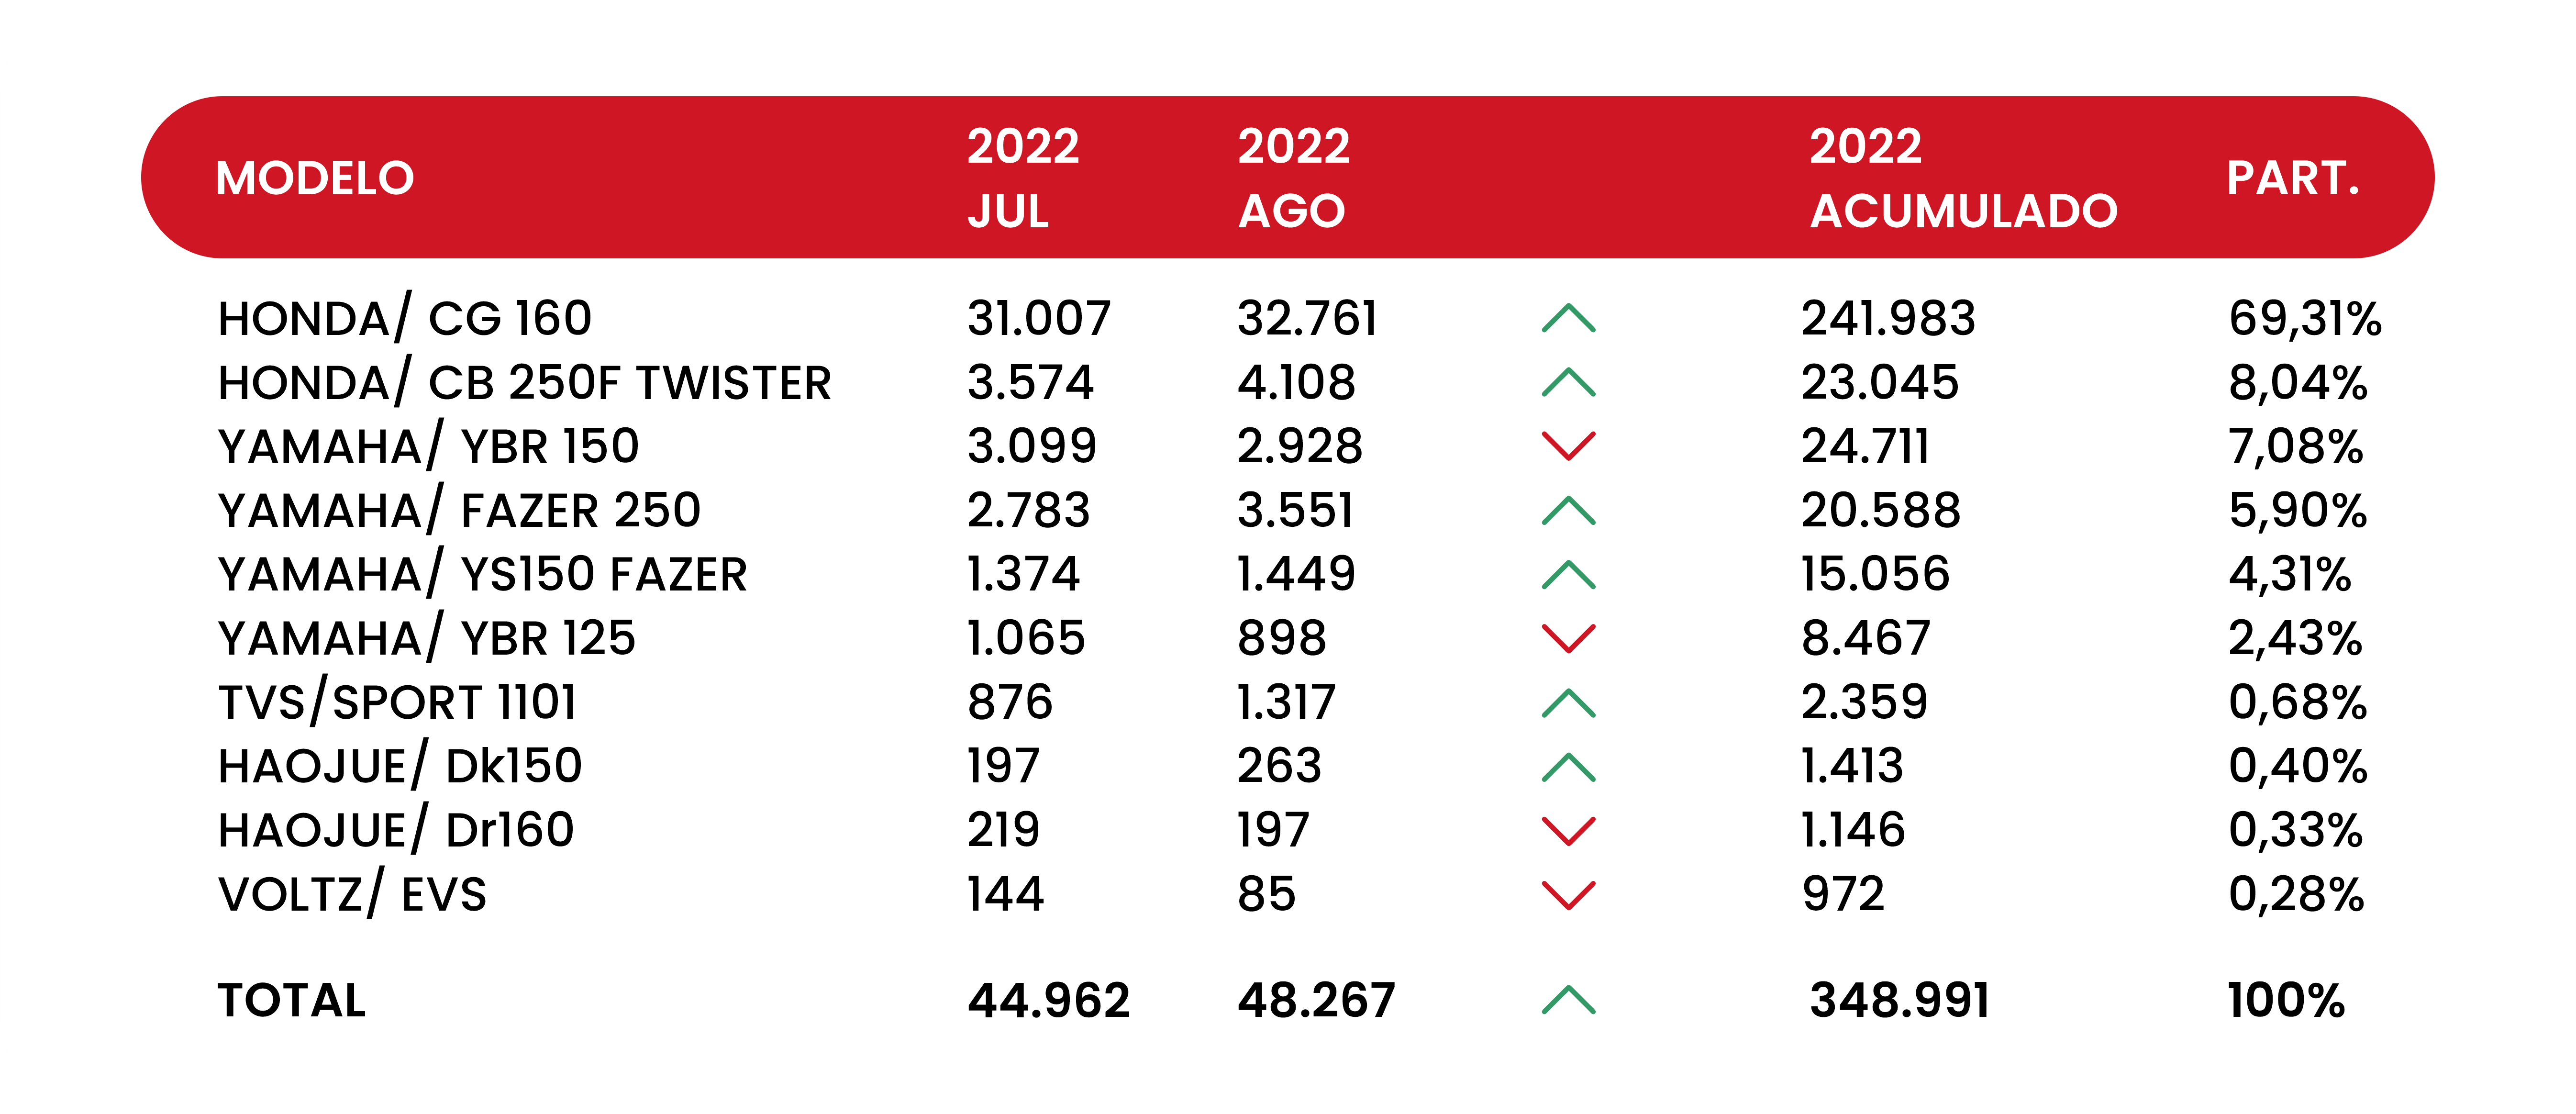 Tabela com o comparativo de motos vendidas em 2022, demonstrando que a Honda/CG 160 foi a mais vendida